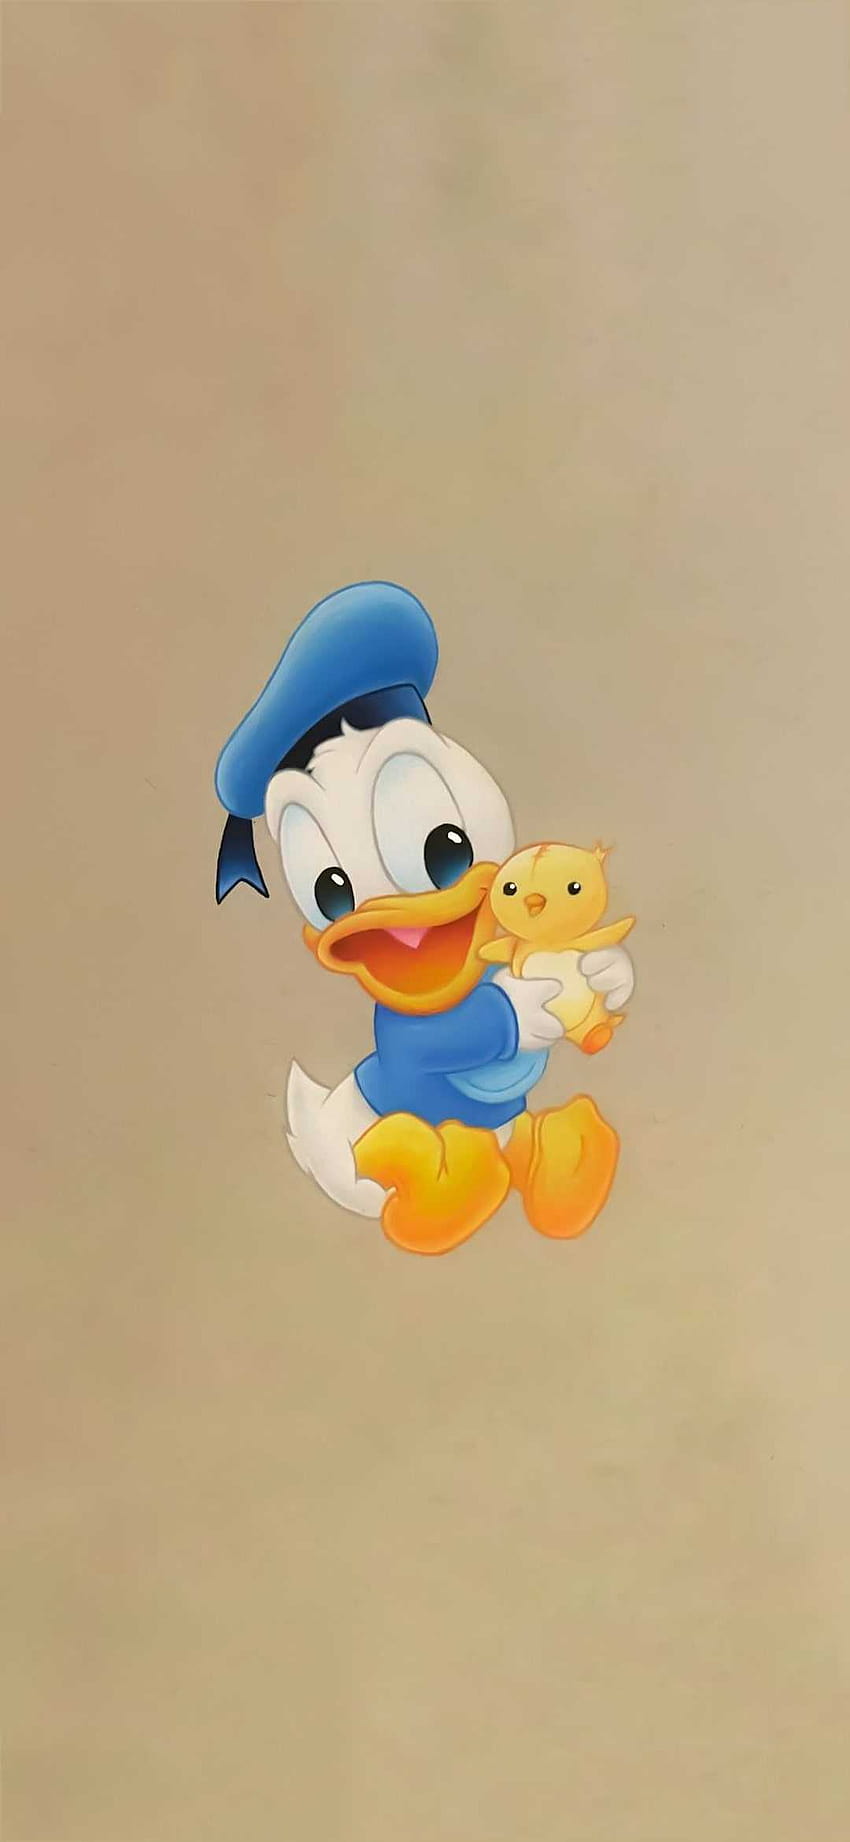 Baby donald duck HD wallpapers | Pxfuel